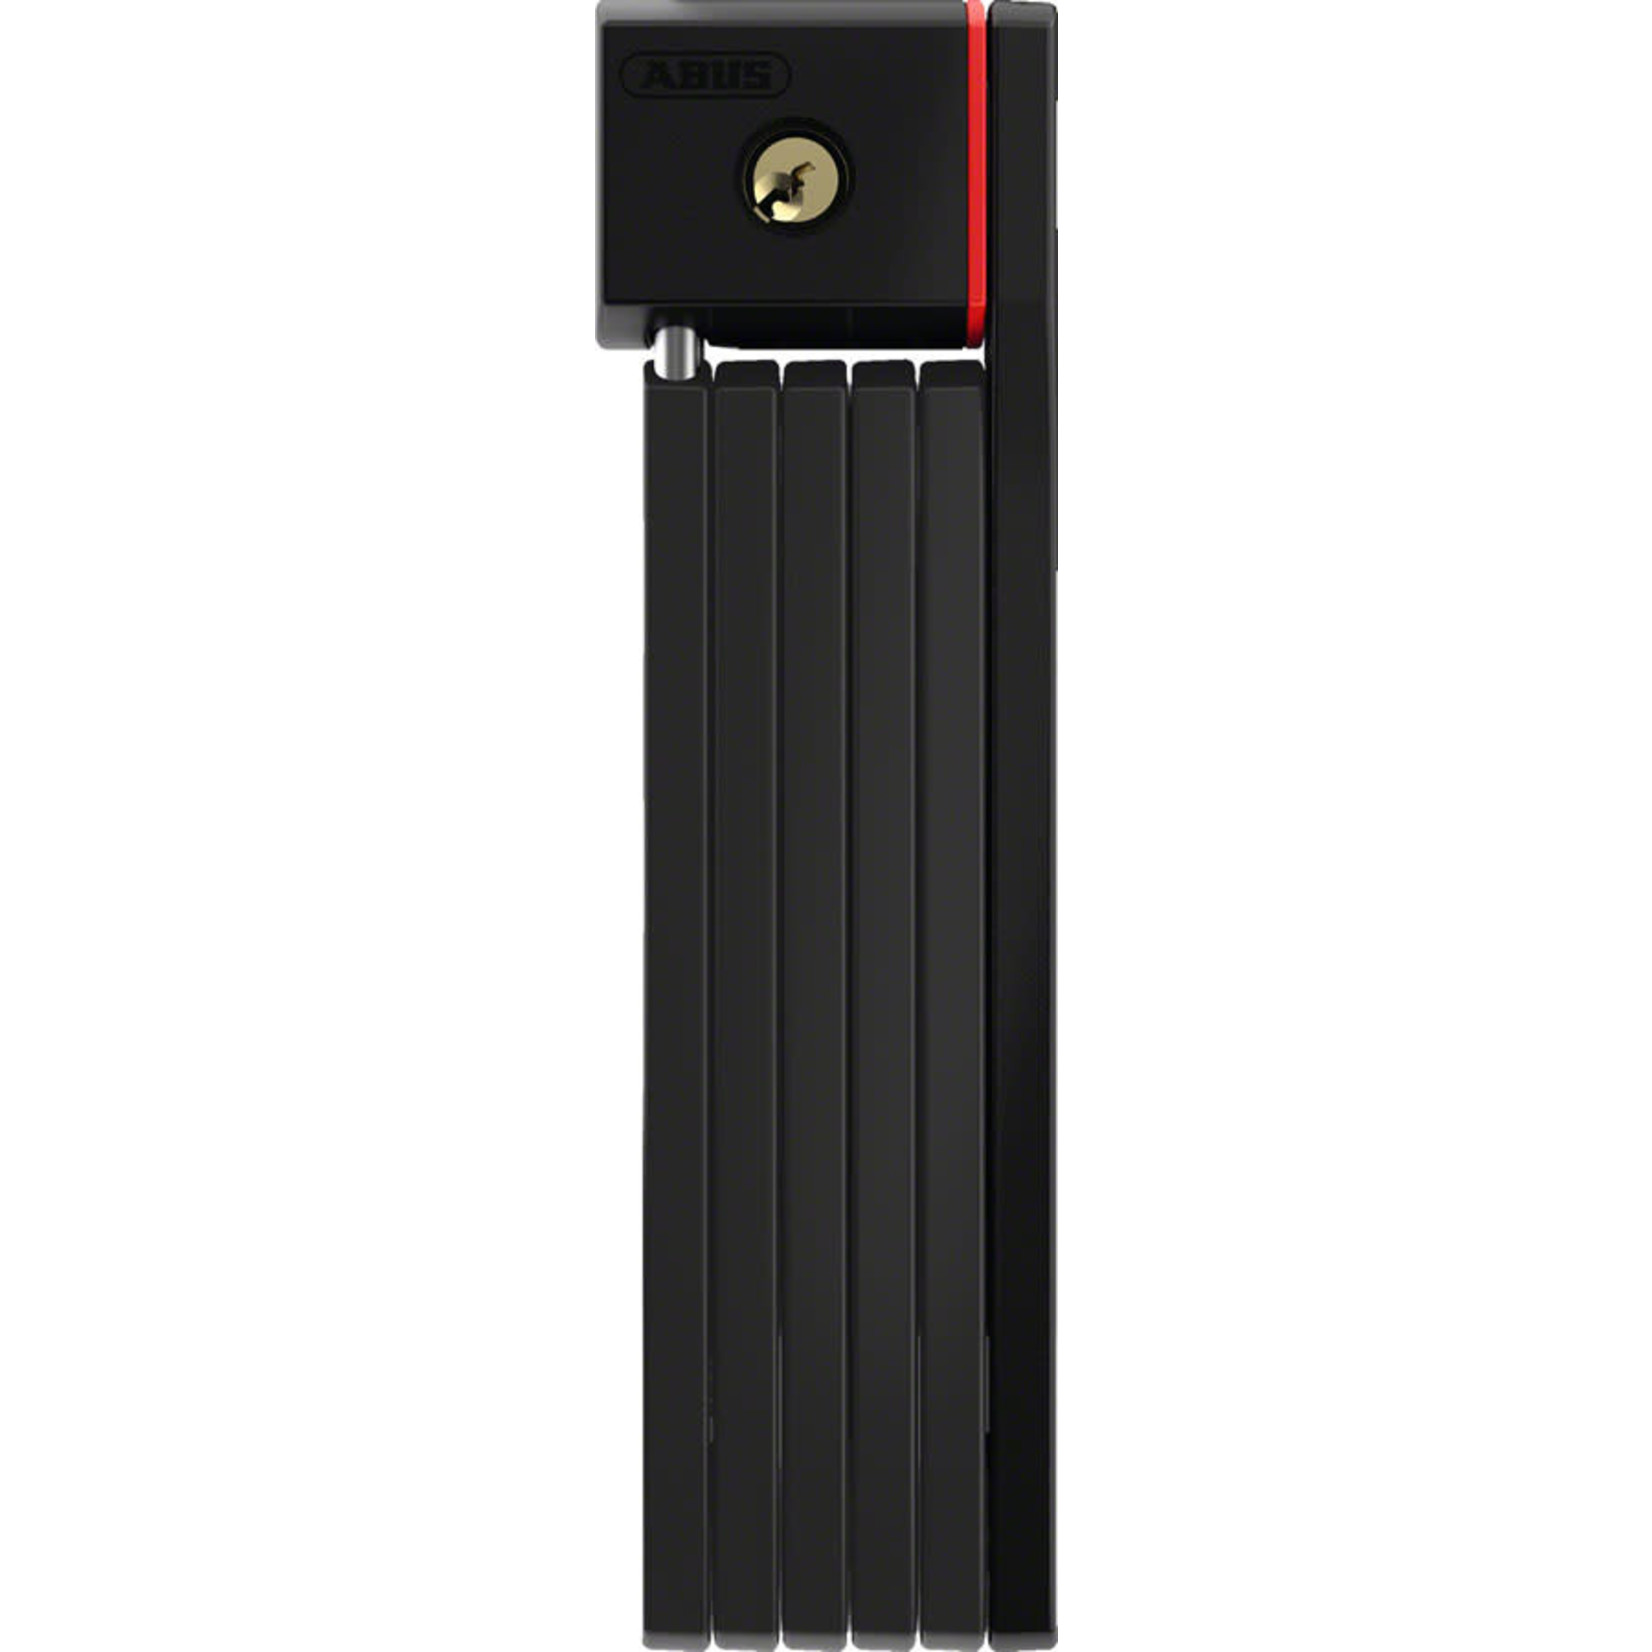 ABUS ABUS Keyed Folding Lock uGrip Bordo 5700 (80cm/2.6ft), Black